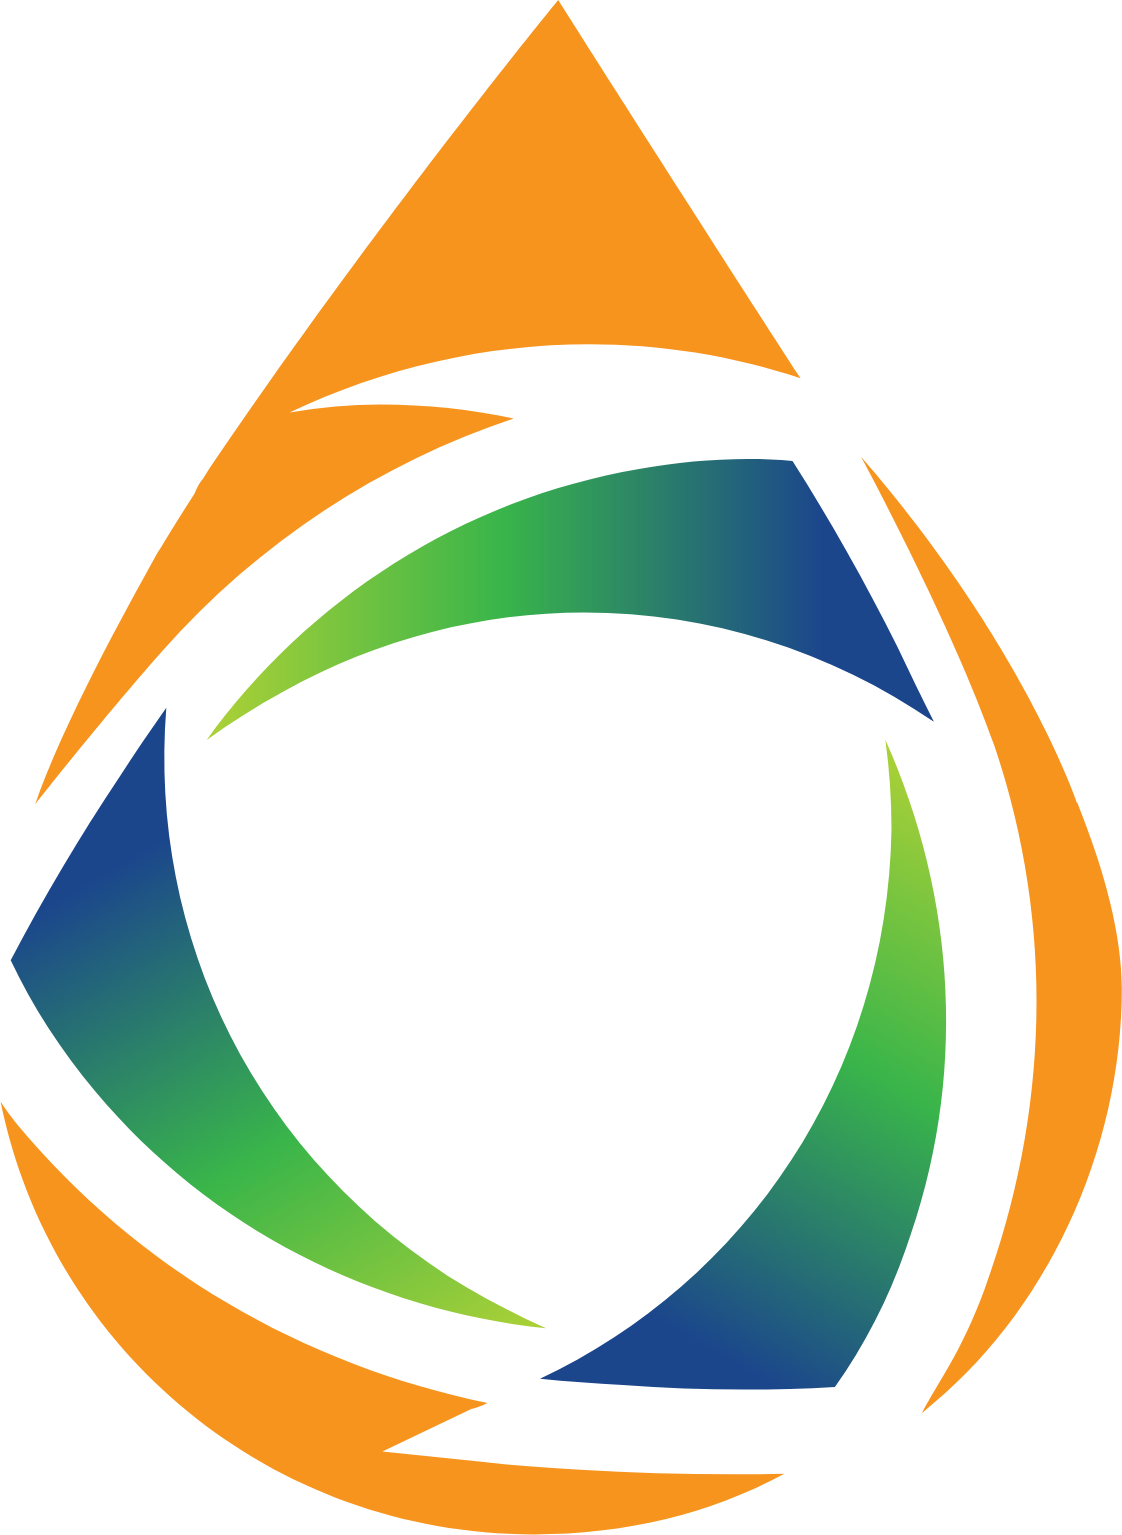 SMN Power Company logo (transparent PNG)